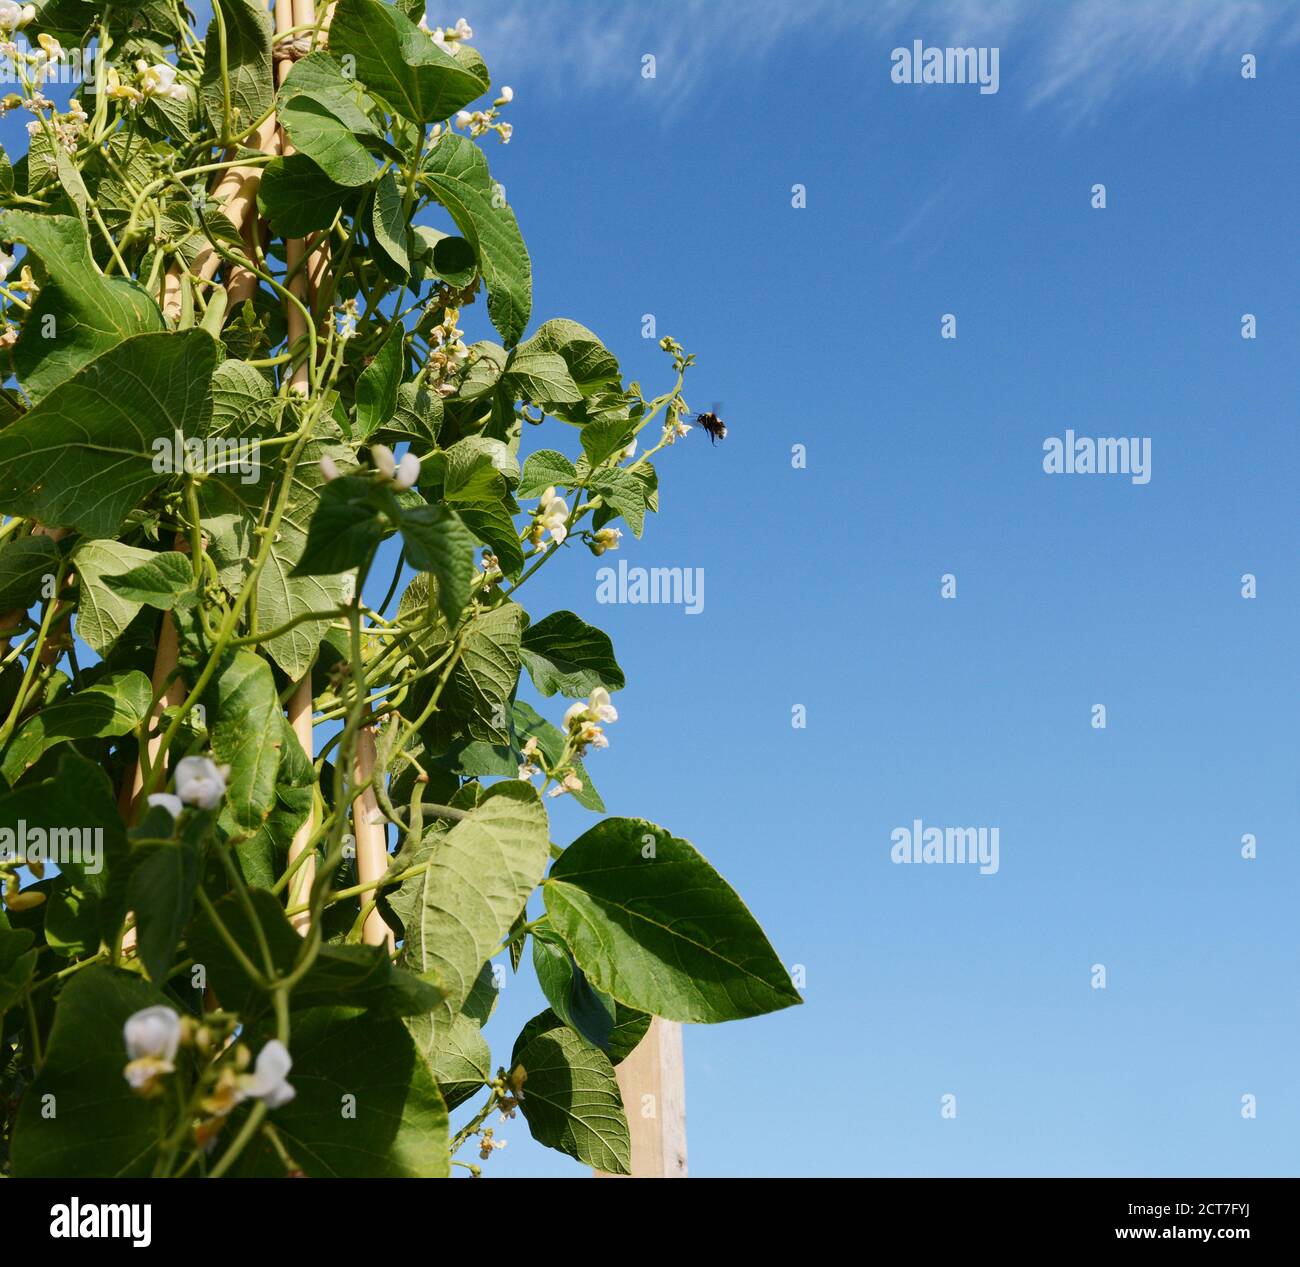 Bumblebee volant à des fleurs blanches de vignes de haricots de Wey, poussant une canne wigwam; copier l'espace sur le ciel bleu Banque D'Images